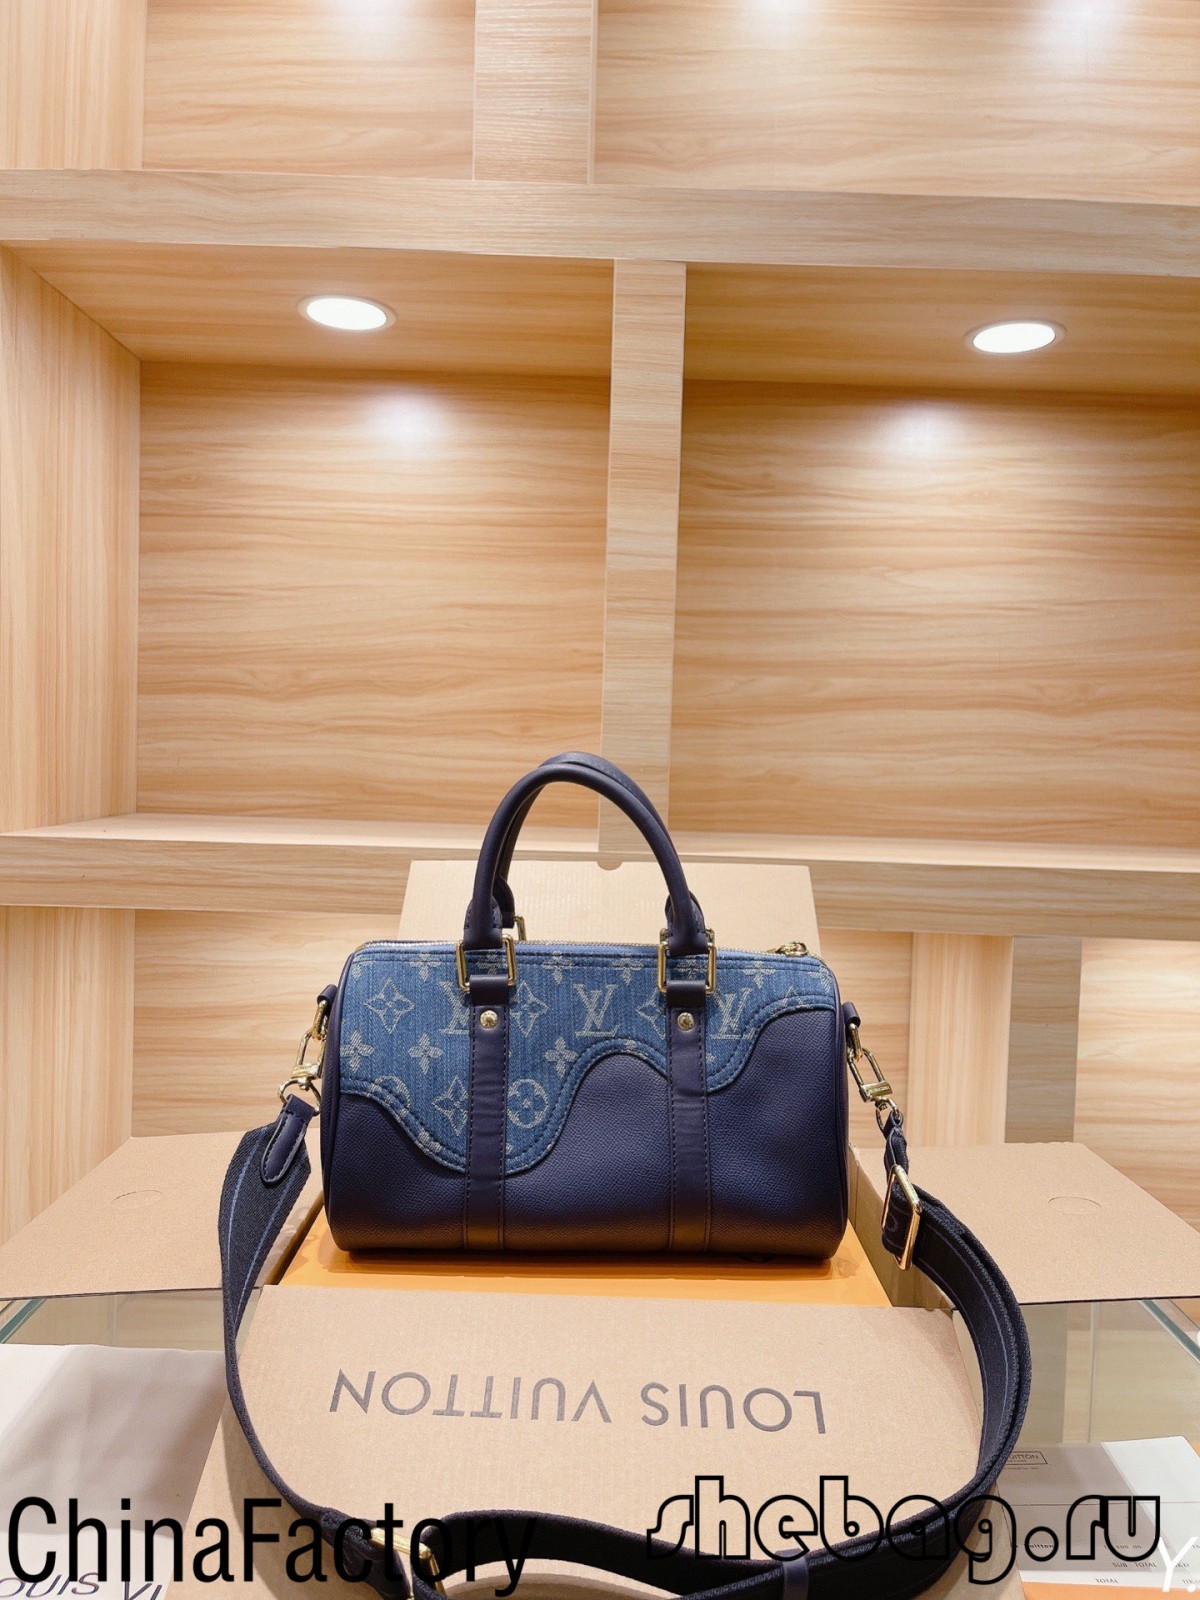 Aaa Replika e çantës Louis Vuitton: LV x nigo (2022 më e nxehtë)-Dyqani në internet i çanta Louis Vuitton Fake me cilësi më të mirë, kopje e çantës së stilistit ru